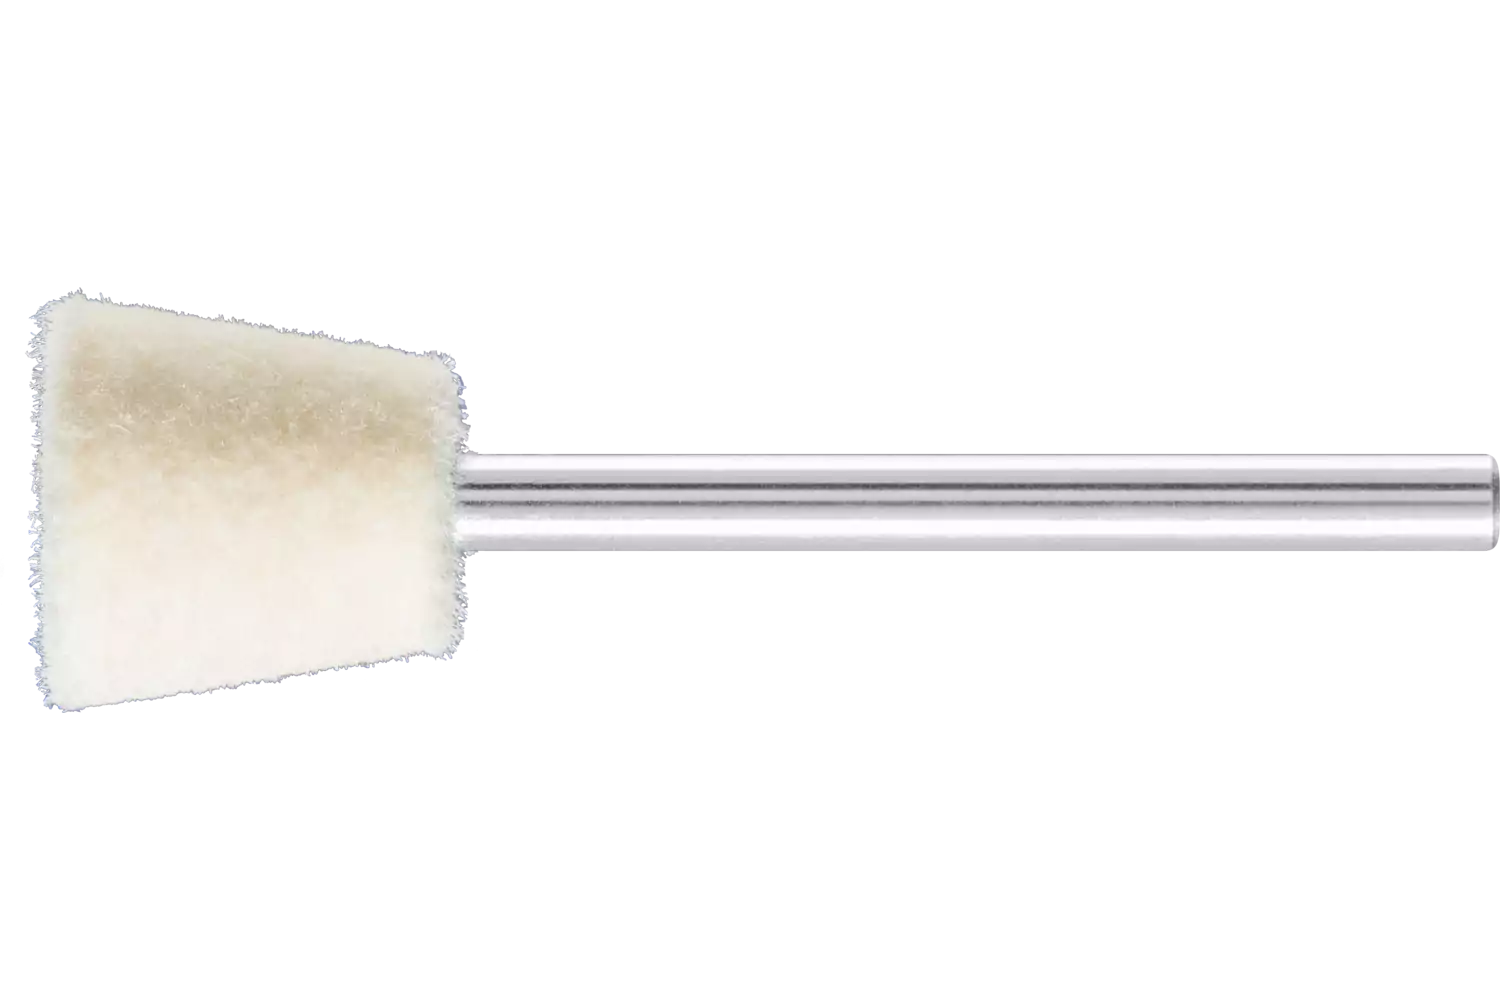 Feltri con gambo per lucidare medio-duri forma a cono rovesciato Ø 12x12 mm, gambo Ø 3 mm 1